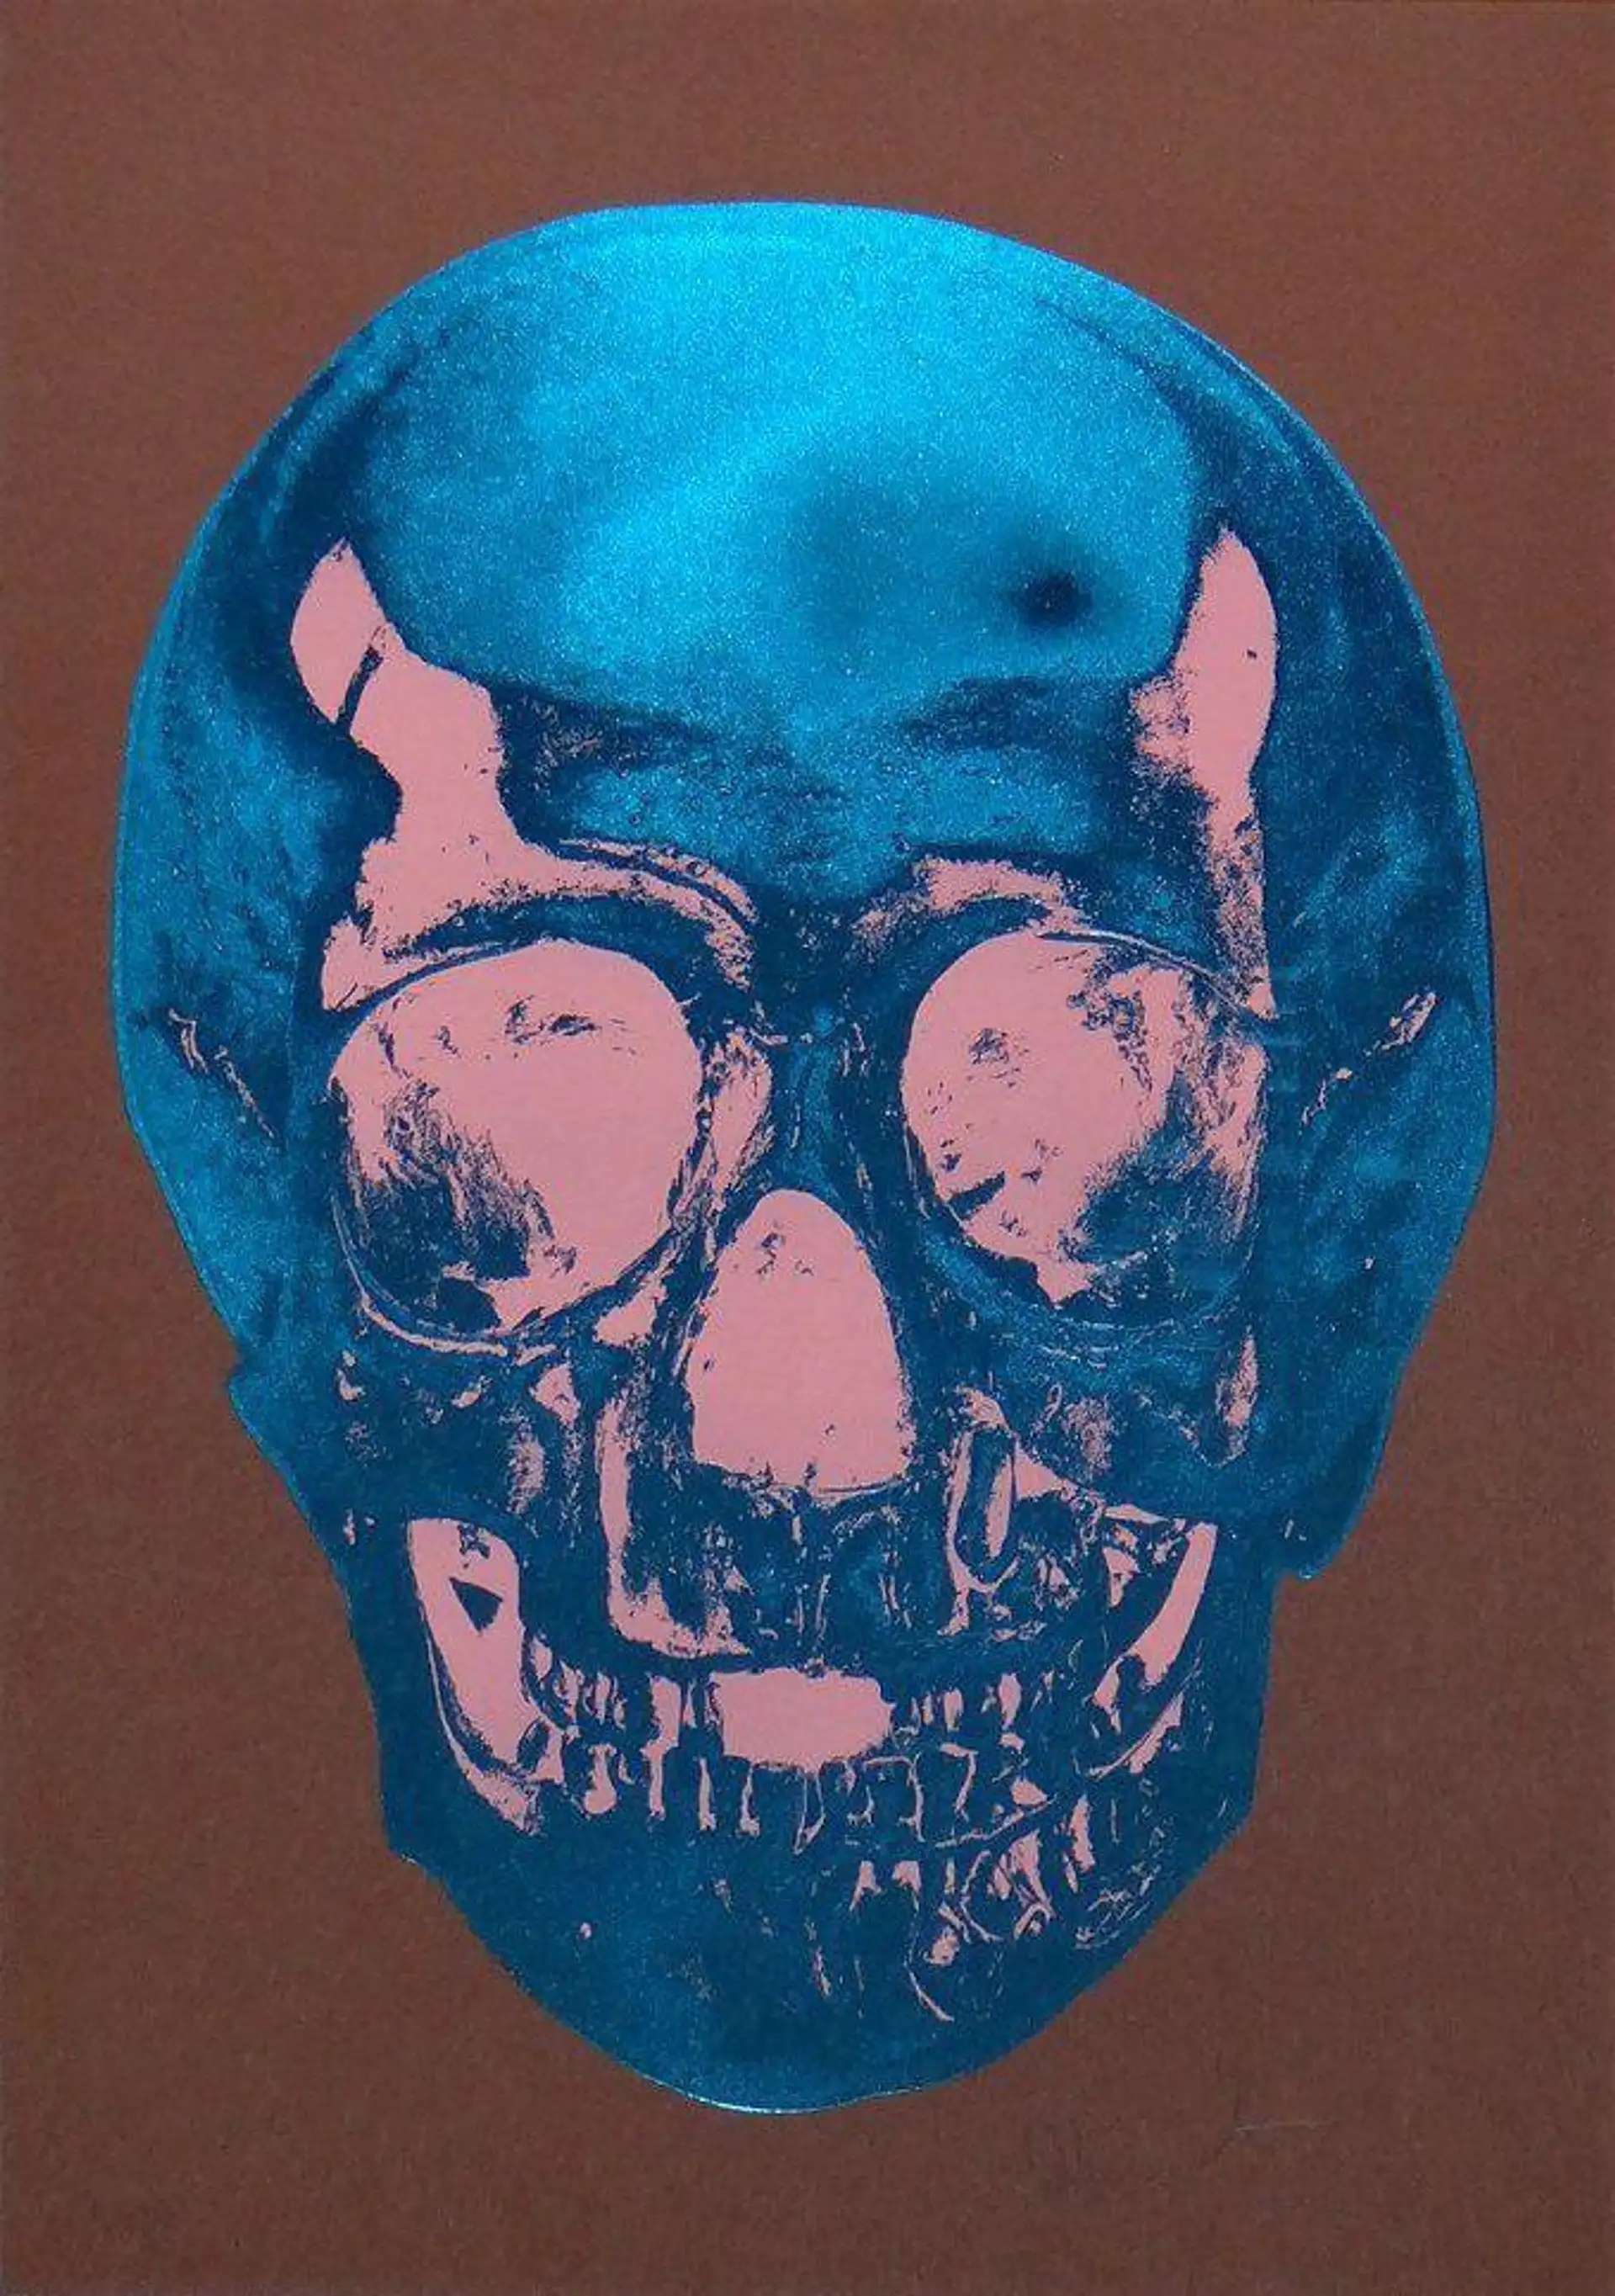 Till Death Do Us Part (milk chocolate brown, true blue, bubblegum pink) by Damien Hirst